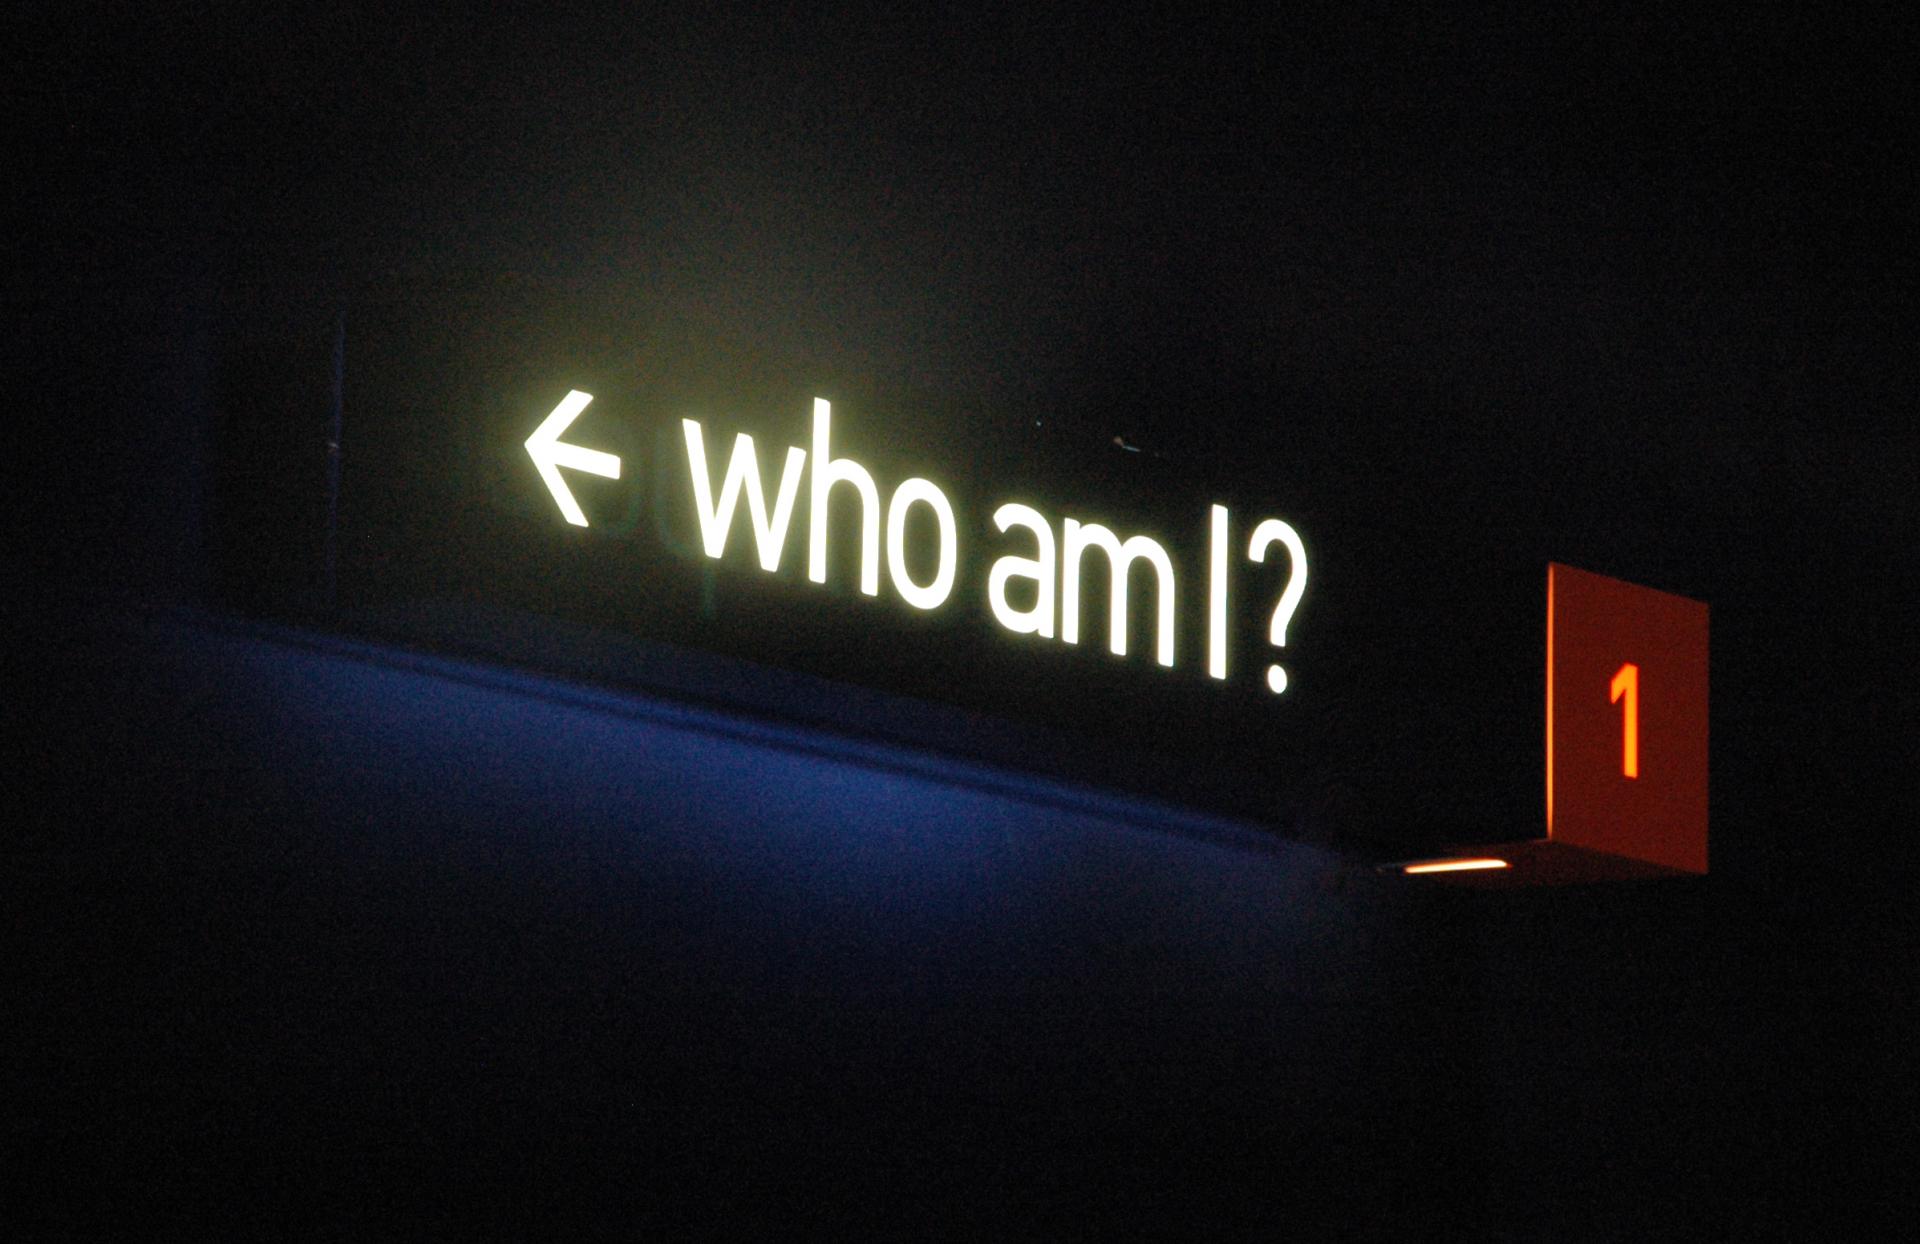 Who am i